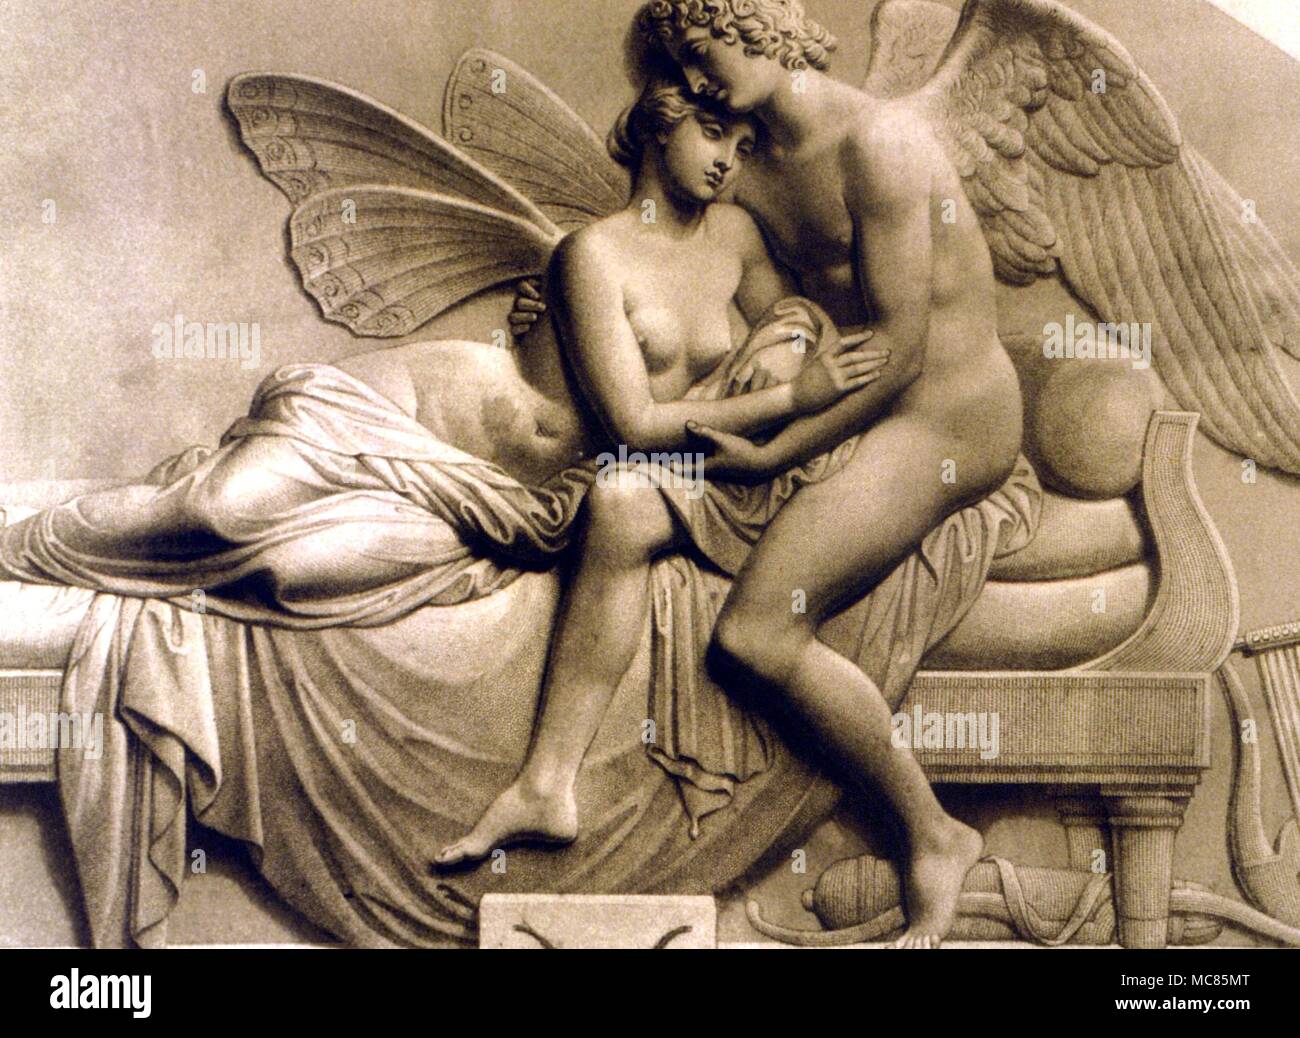 Der griechischen Mythologie Amor und Psyche Kupferstich von roffe nach der bas-relief von J Gibson von "Amor und Psyche", die früher in der Sammlung der britischen Königin Victoria. Stockfoto